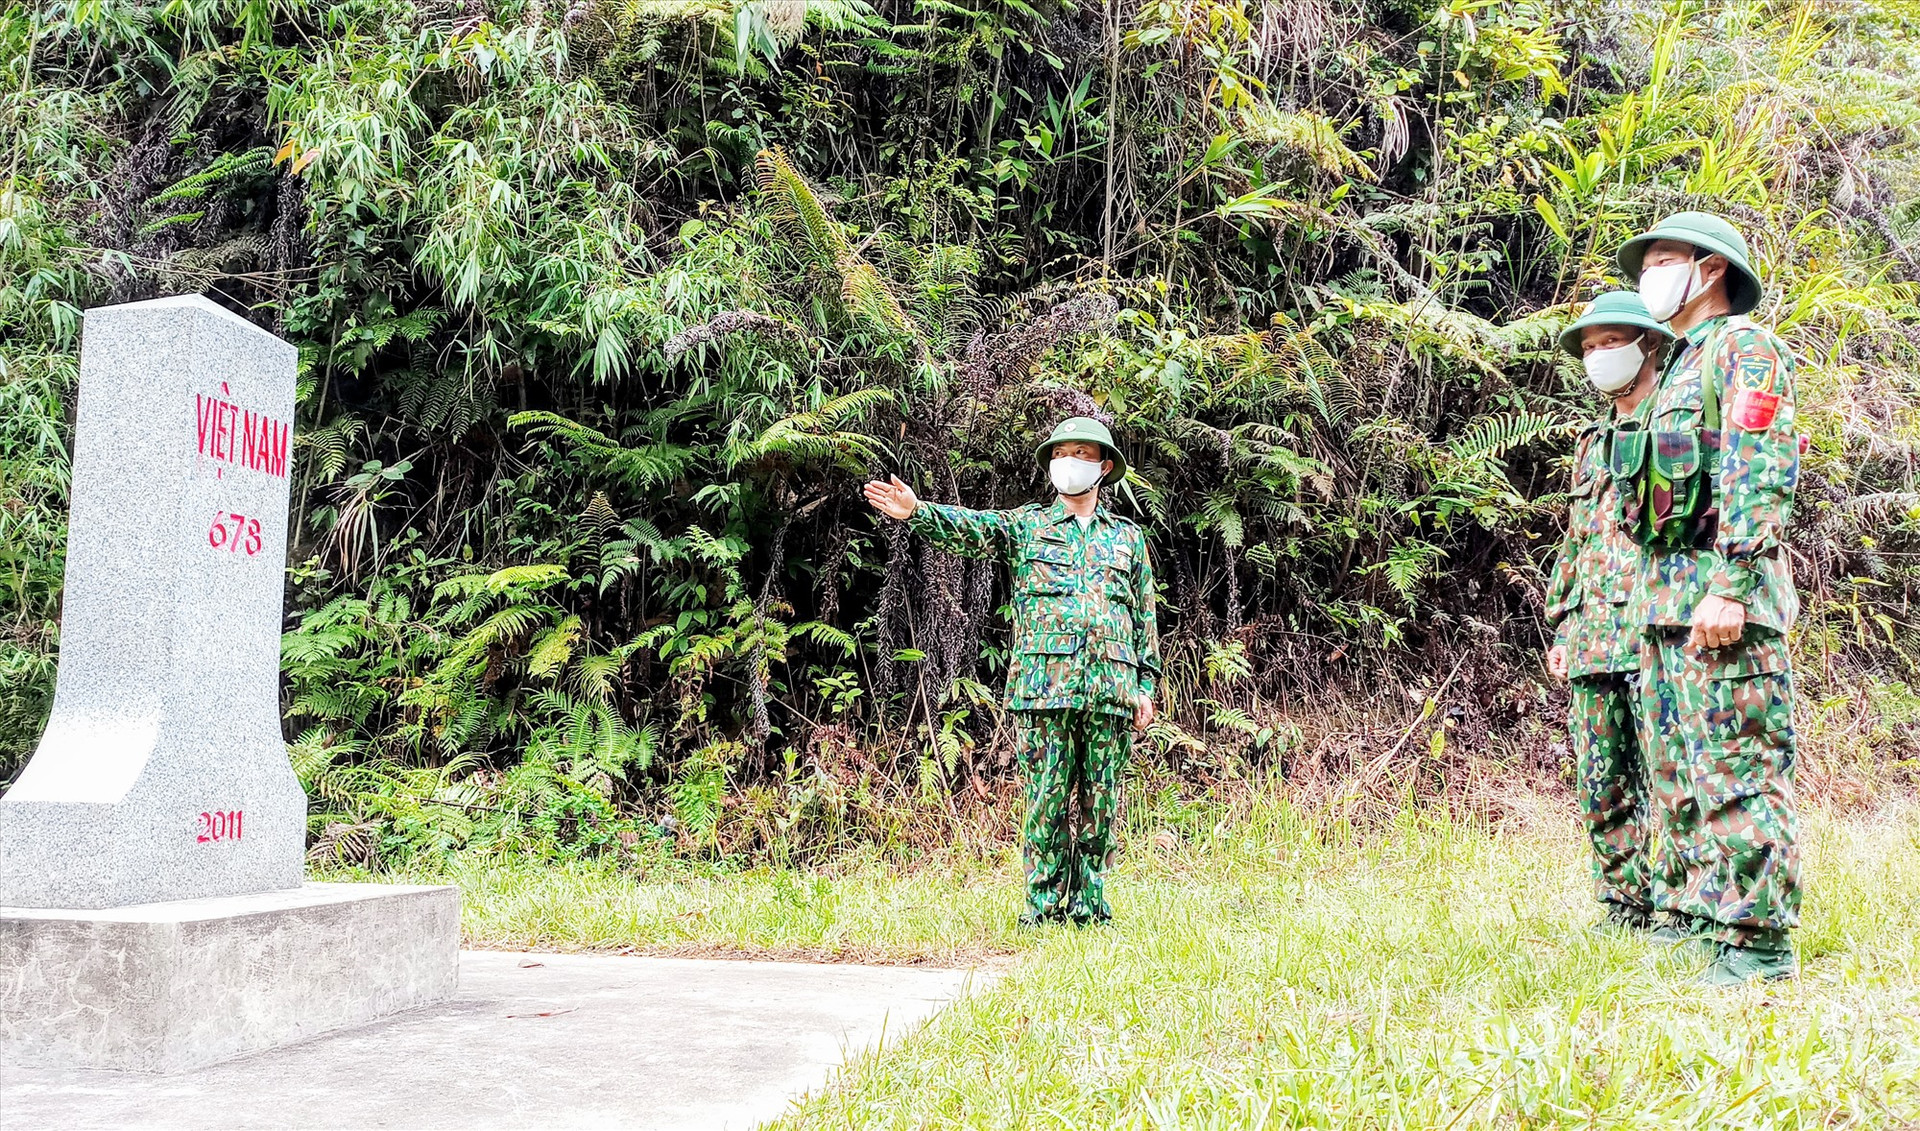 Gác lại niềm riêng, Đại úy Nguyễn Công Thuần (bên trái) cùng đồng đội miệt mài với nhiệm vụ tuần tra biên giới. Ảnh: ALĂNG NGƯỚC